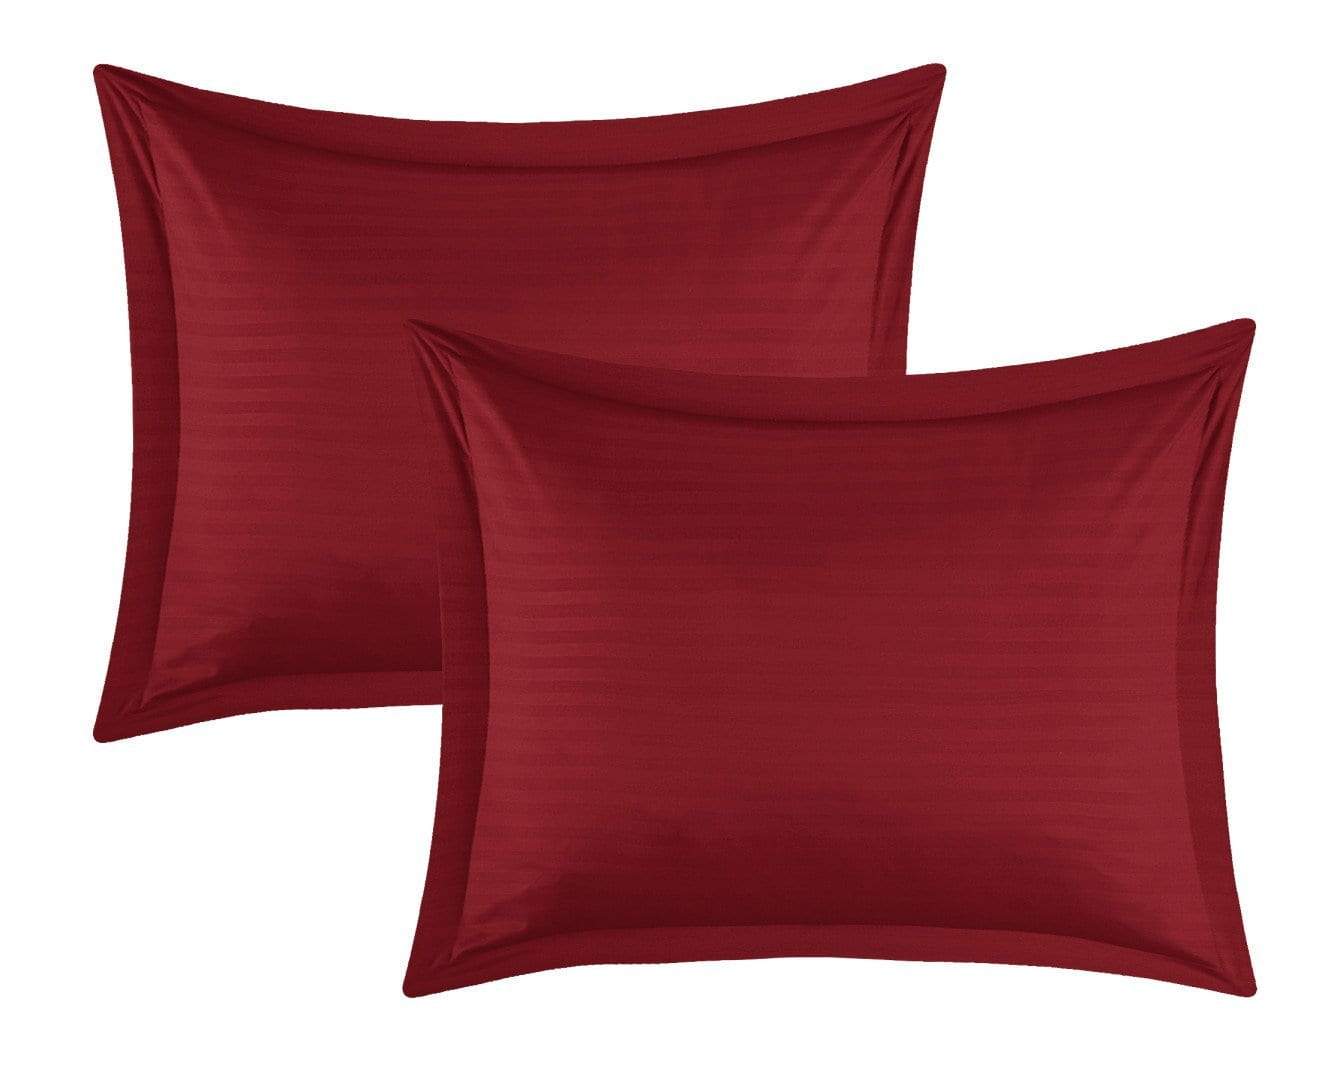 Khaya 7 Piece Jacquard Comforter Set